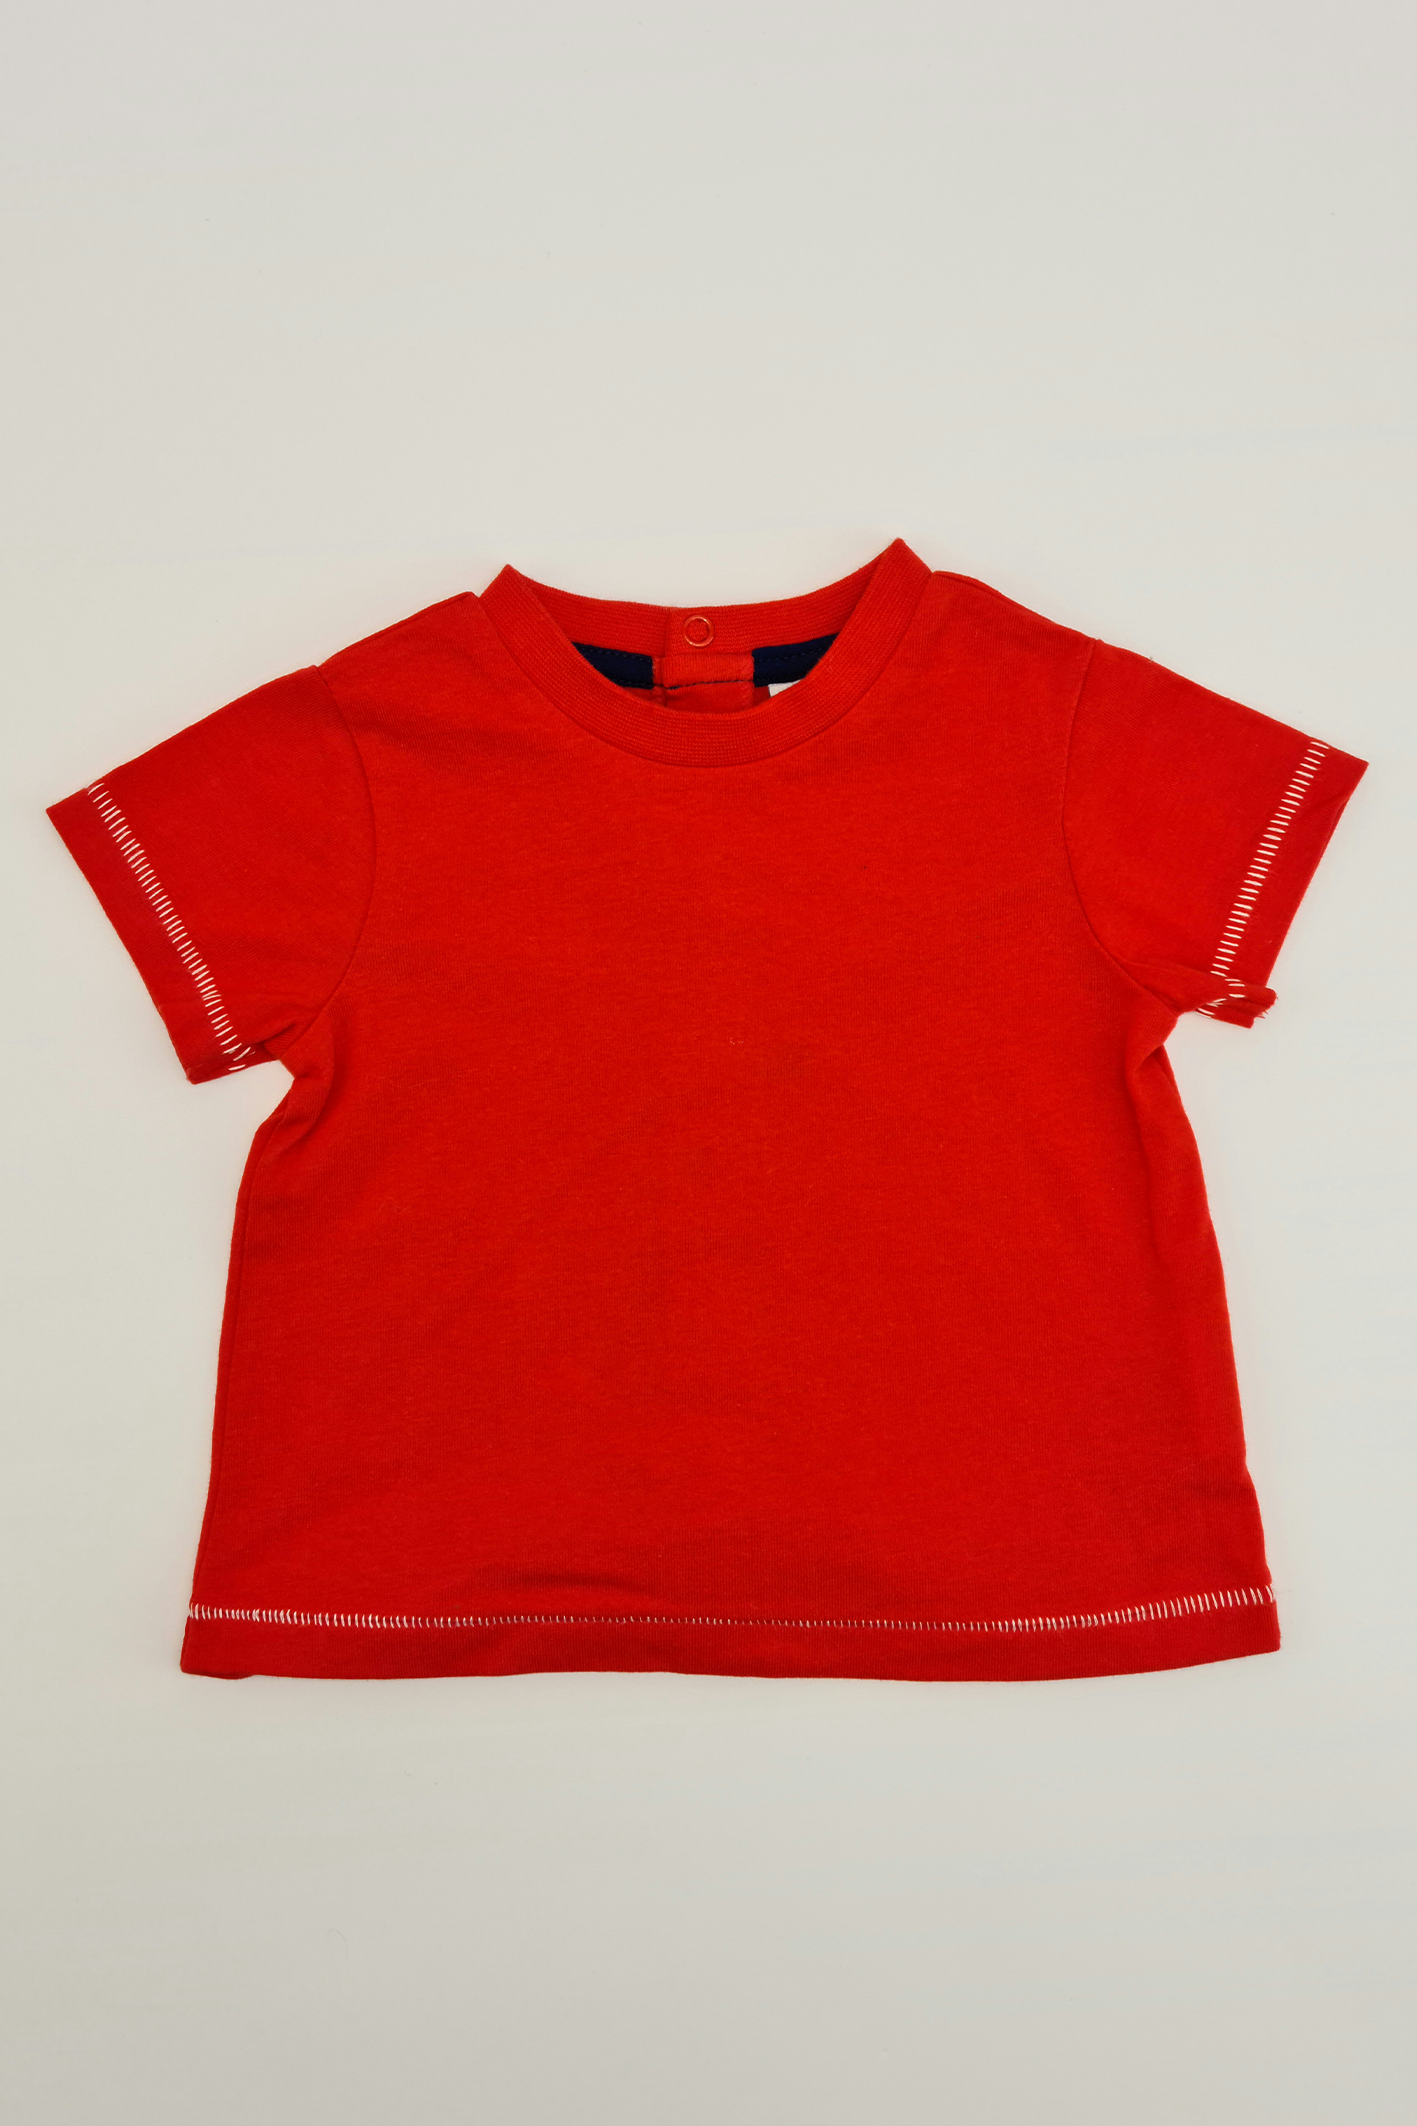 Red T-shirt - Precuddled.com